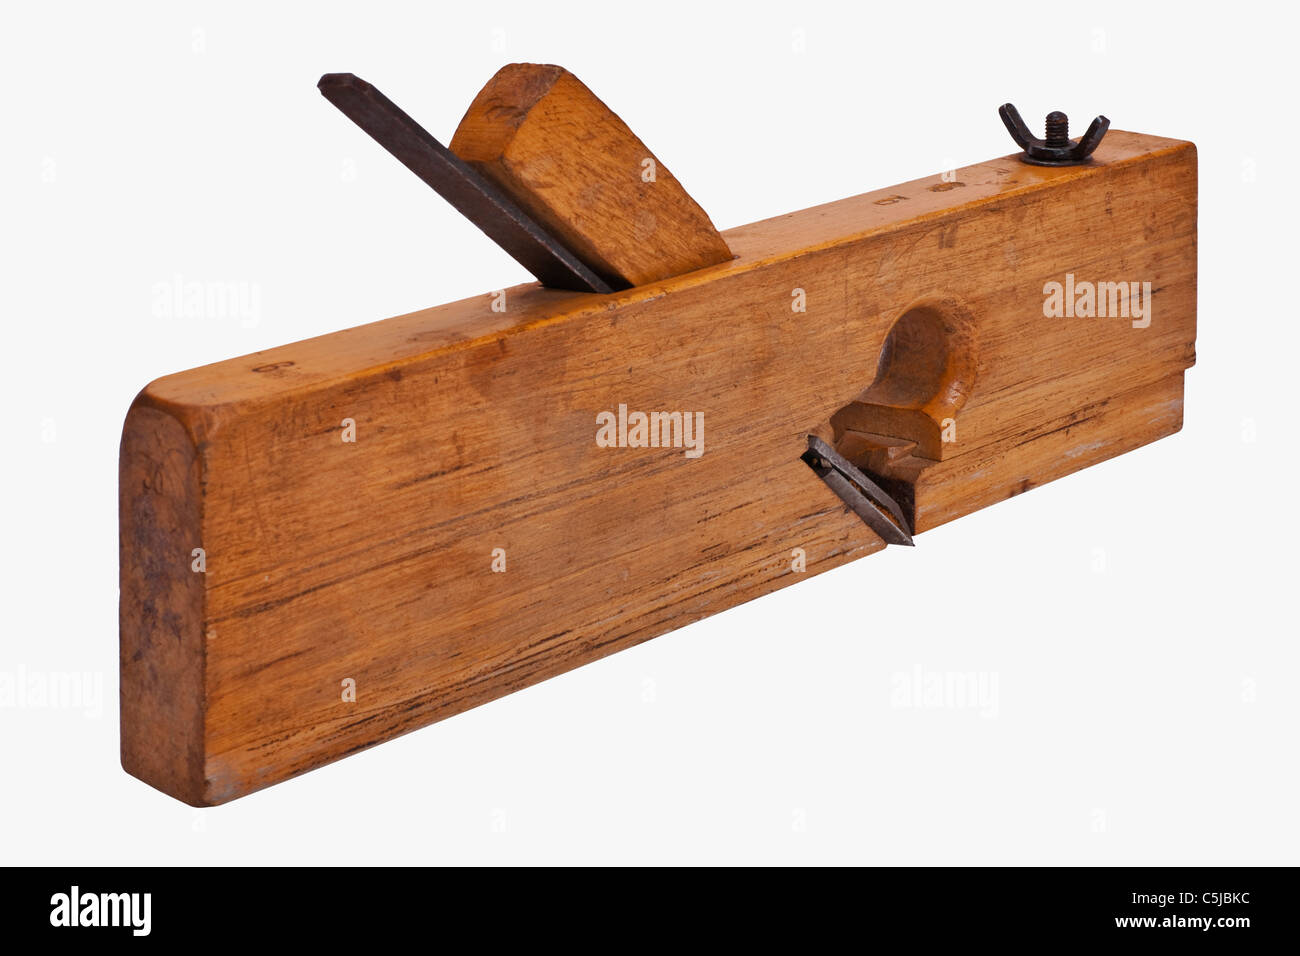 Detailansicht eines alten Falzhobels | Detail photo of a old rabbet plane Stock Photo